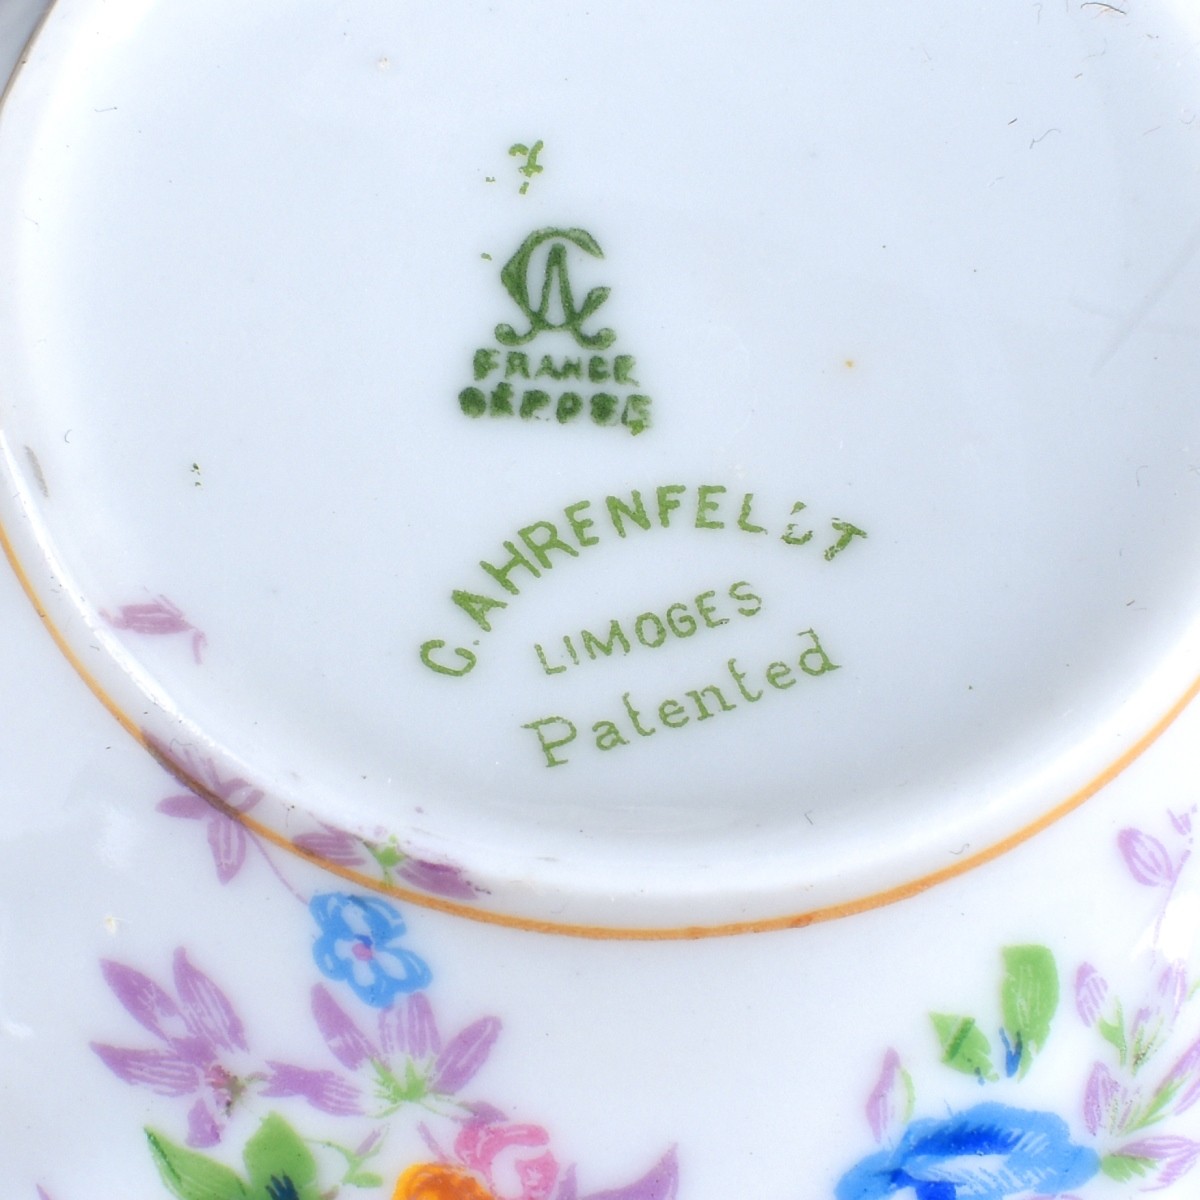 Charles Ahrenfeldt Limoges Porcelain Service